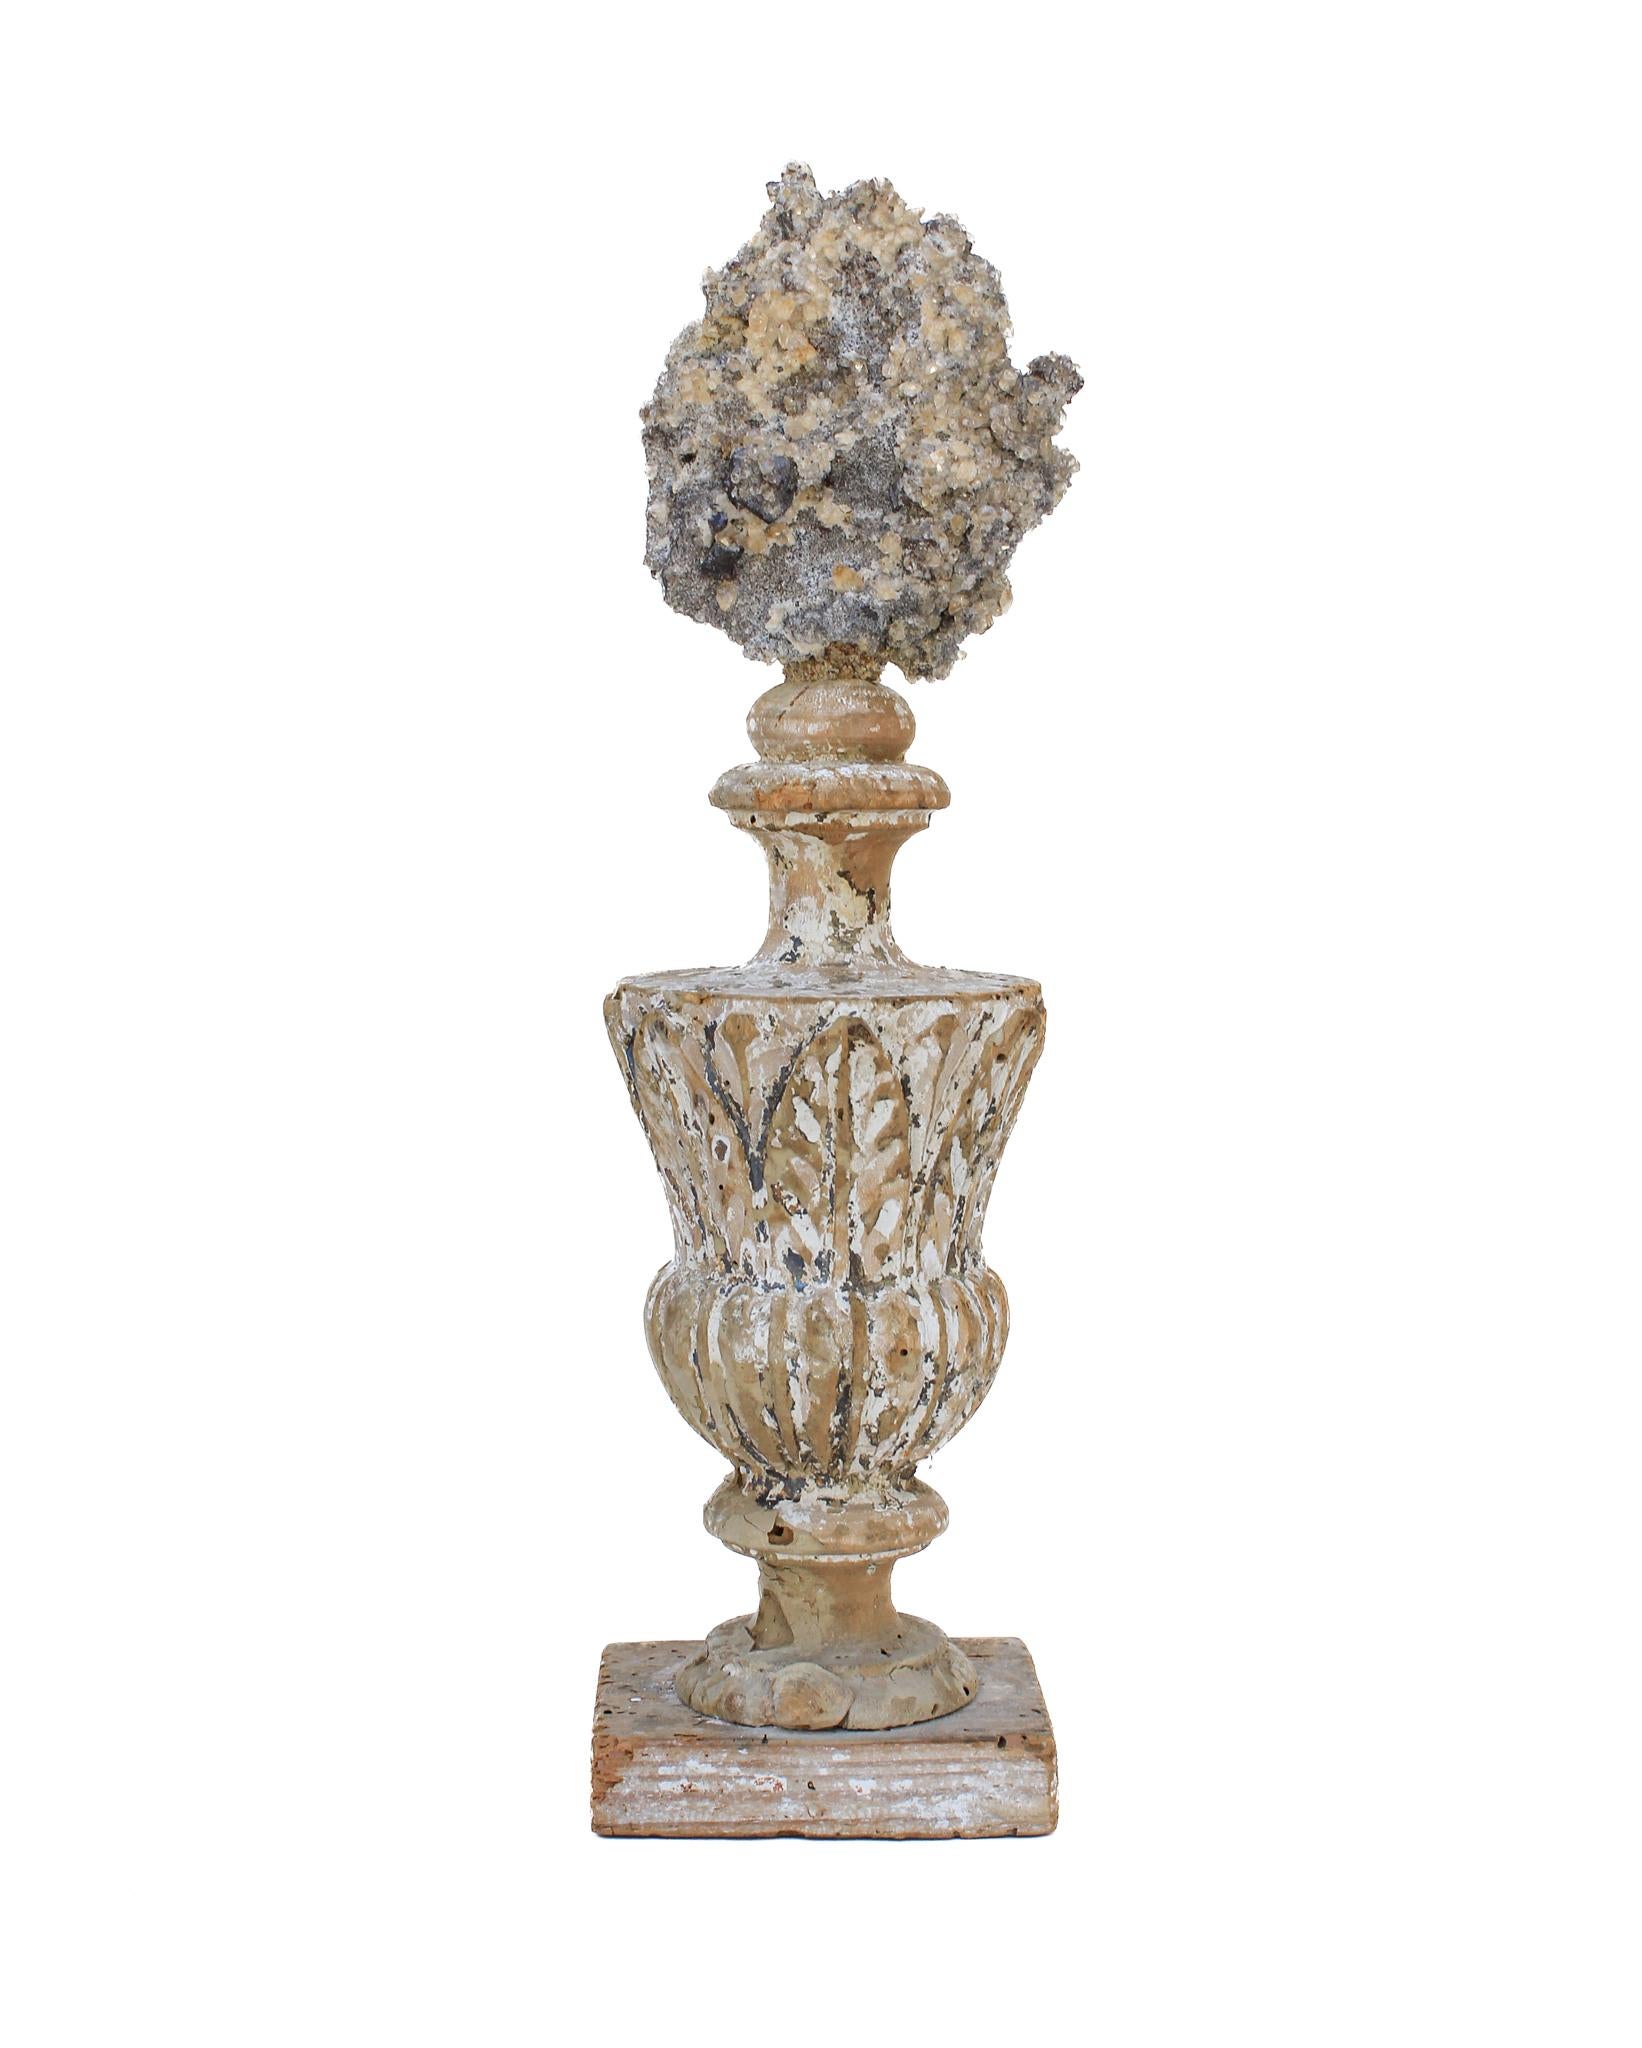 italienische Vase aus dem 17. Jahrhundert mit einem Calcit-Kristallcluster in einer Matrix mit Sphalerit.

Dieses Fragment stammt aus einer Kirche in Florenz. Es wurde gefunden und vor dem historischen Hochwasser des Arno im Jahr 1966